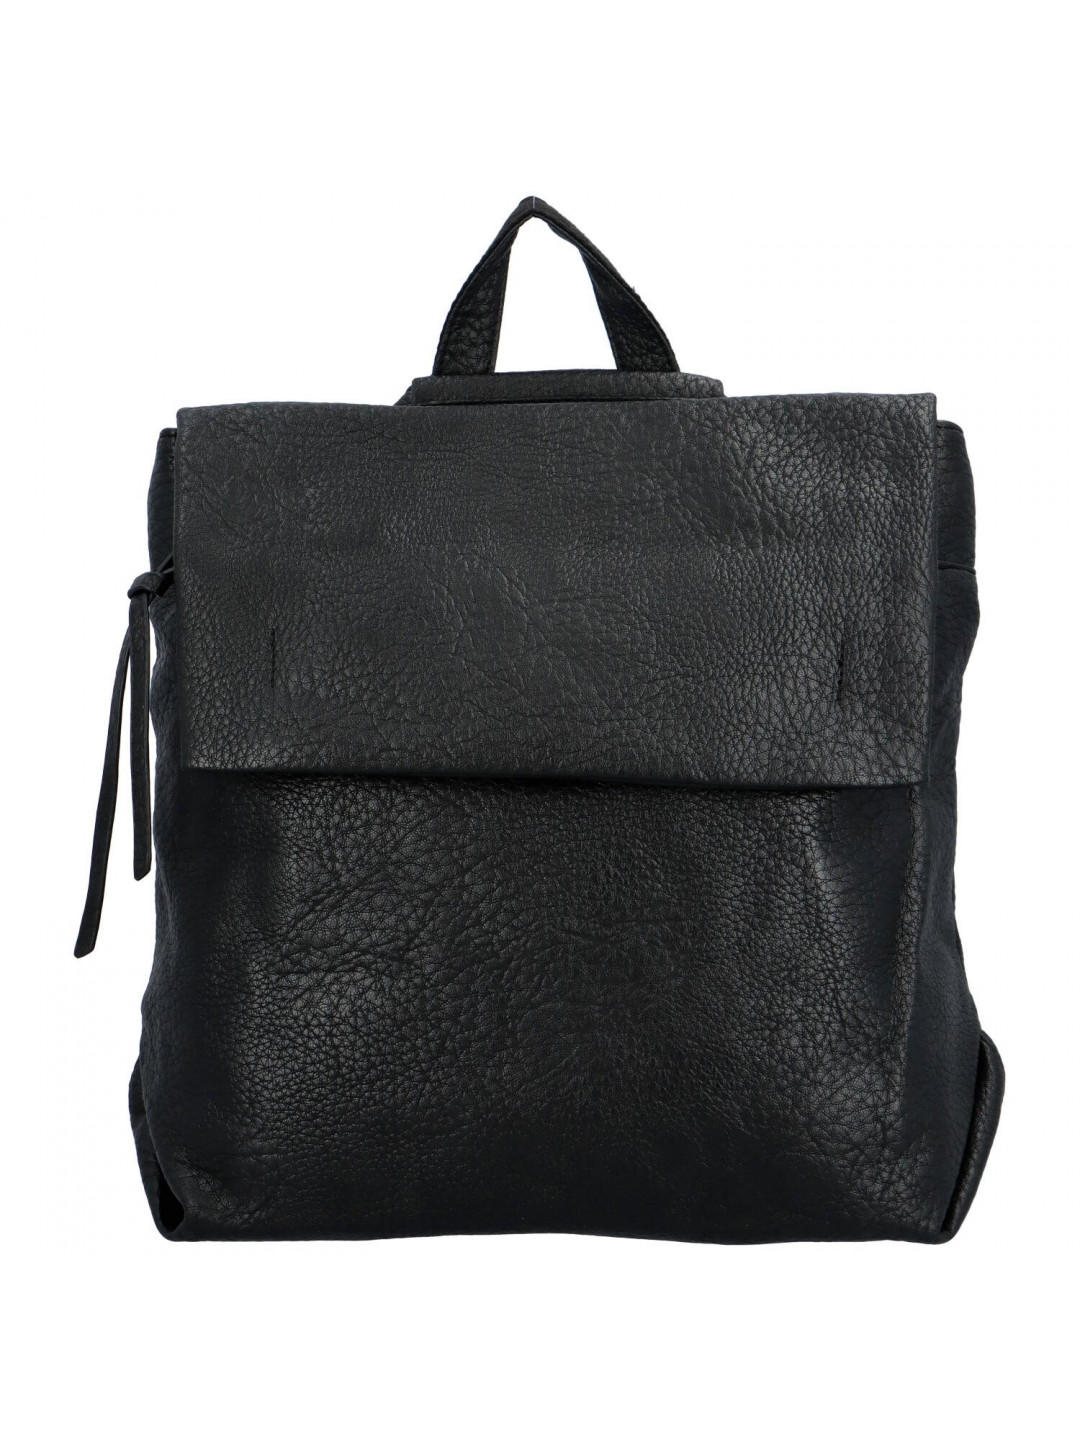 Stylový městský dámský koženkový batoh Sonleada černá